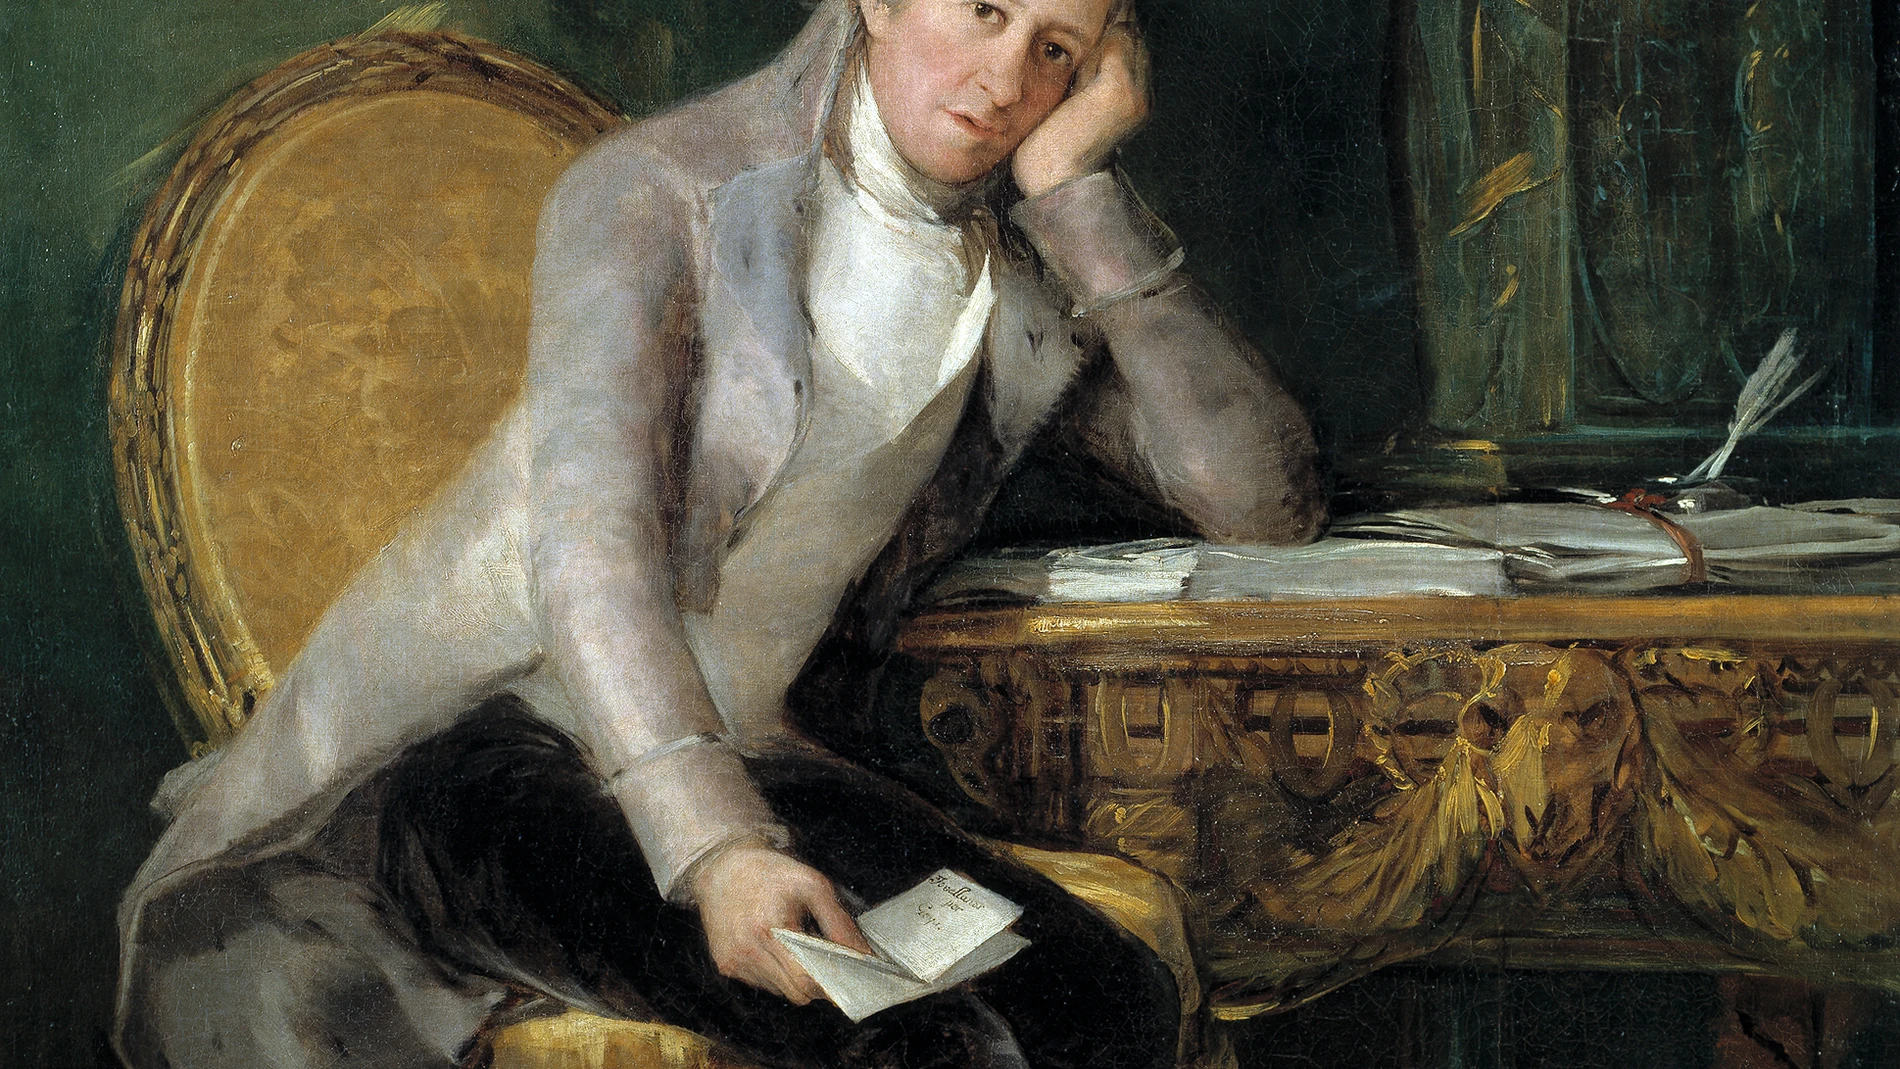 Representante de la Ilustración en España, Gaspar Melchor de Jovellanos fue retratado por Goya en 1798